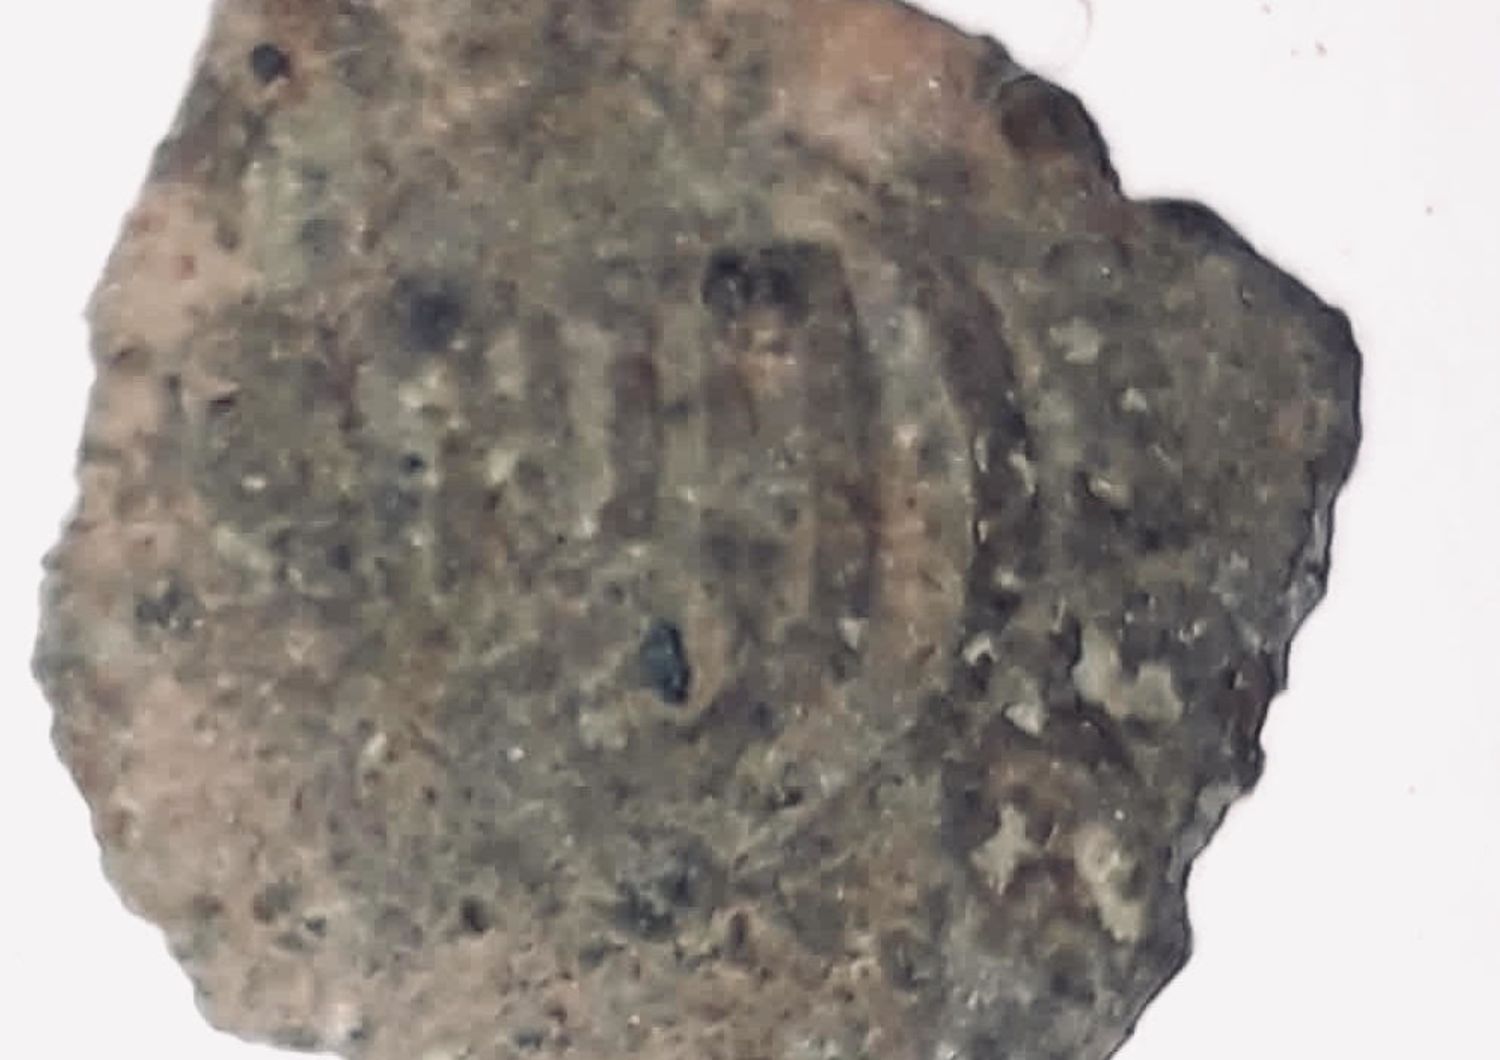 Una delle monete recuperate durante gli scavi a Palermo